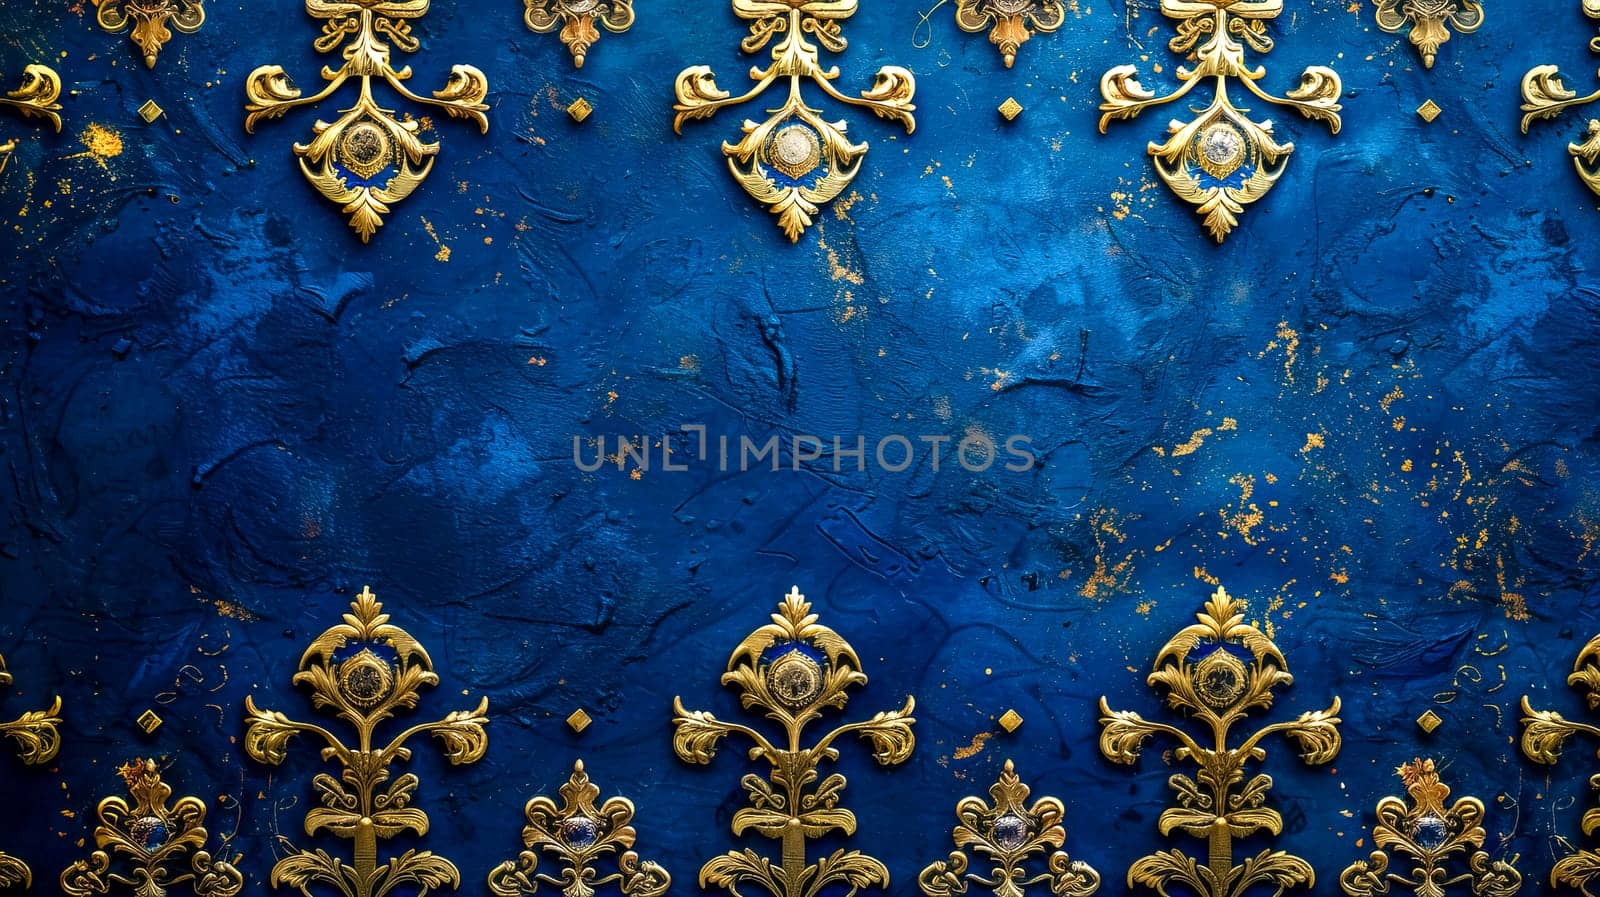 Elegant royal blue textured background with ornate golden details